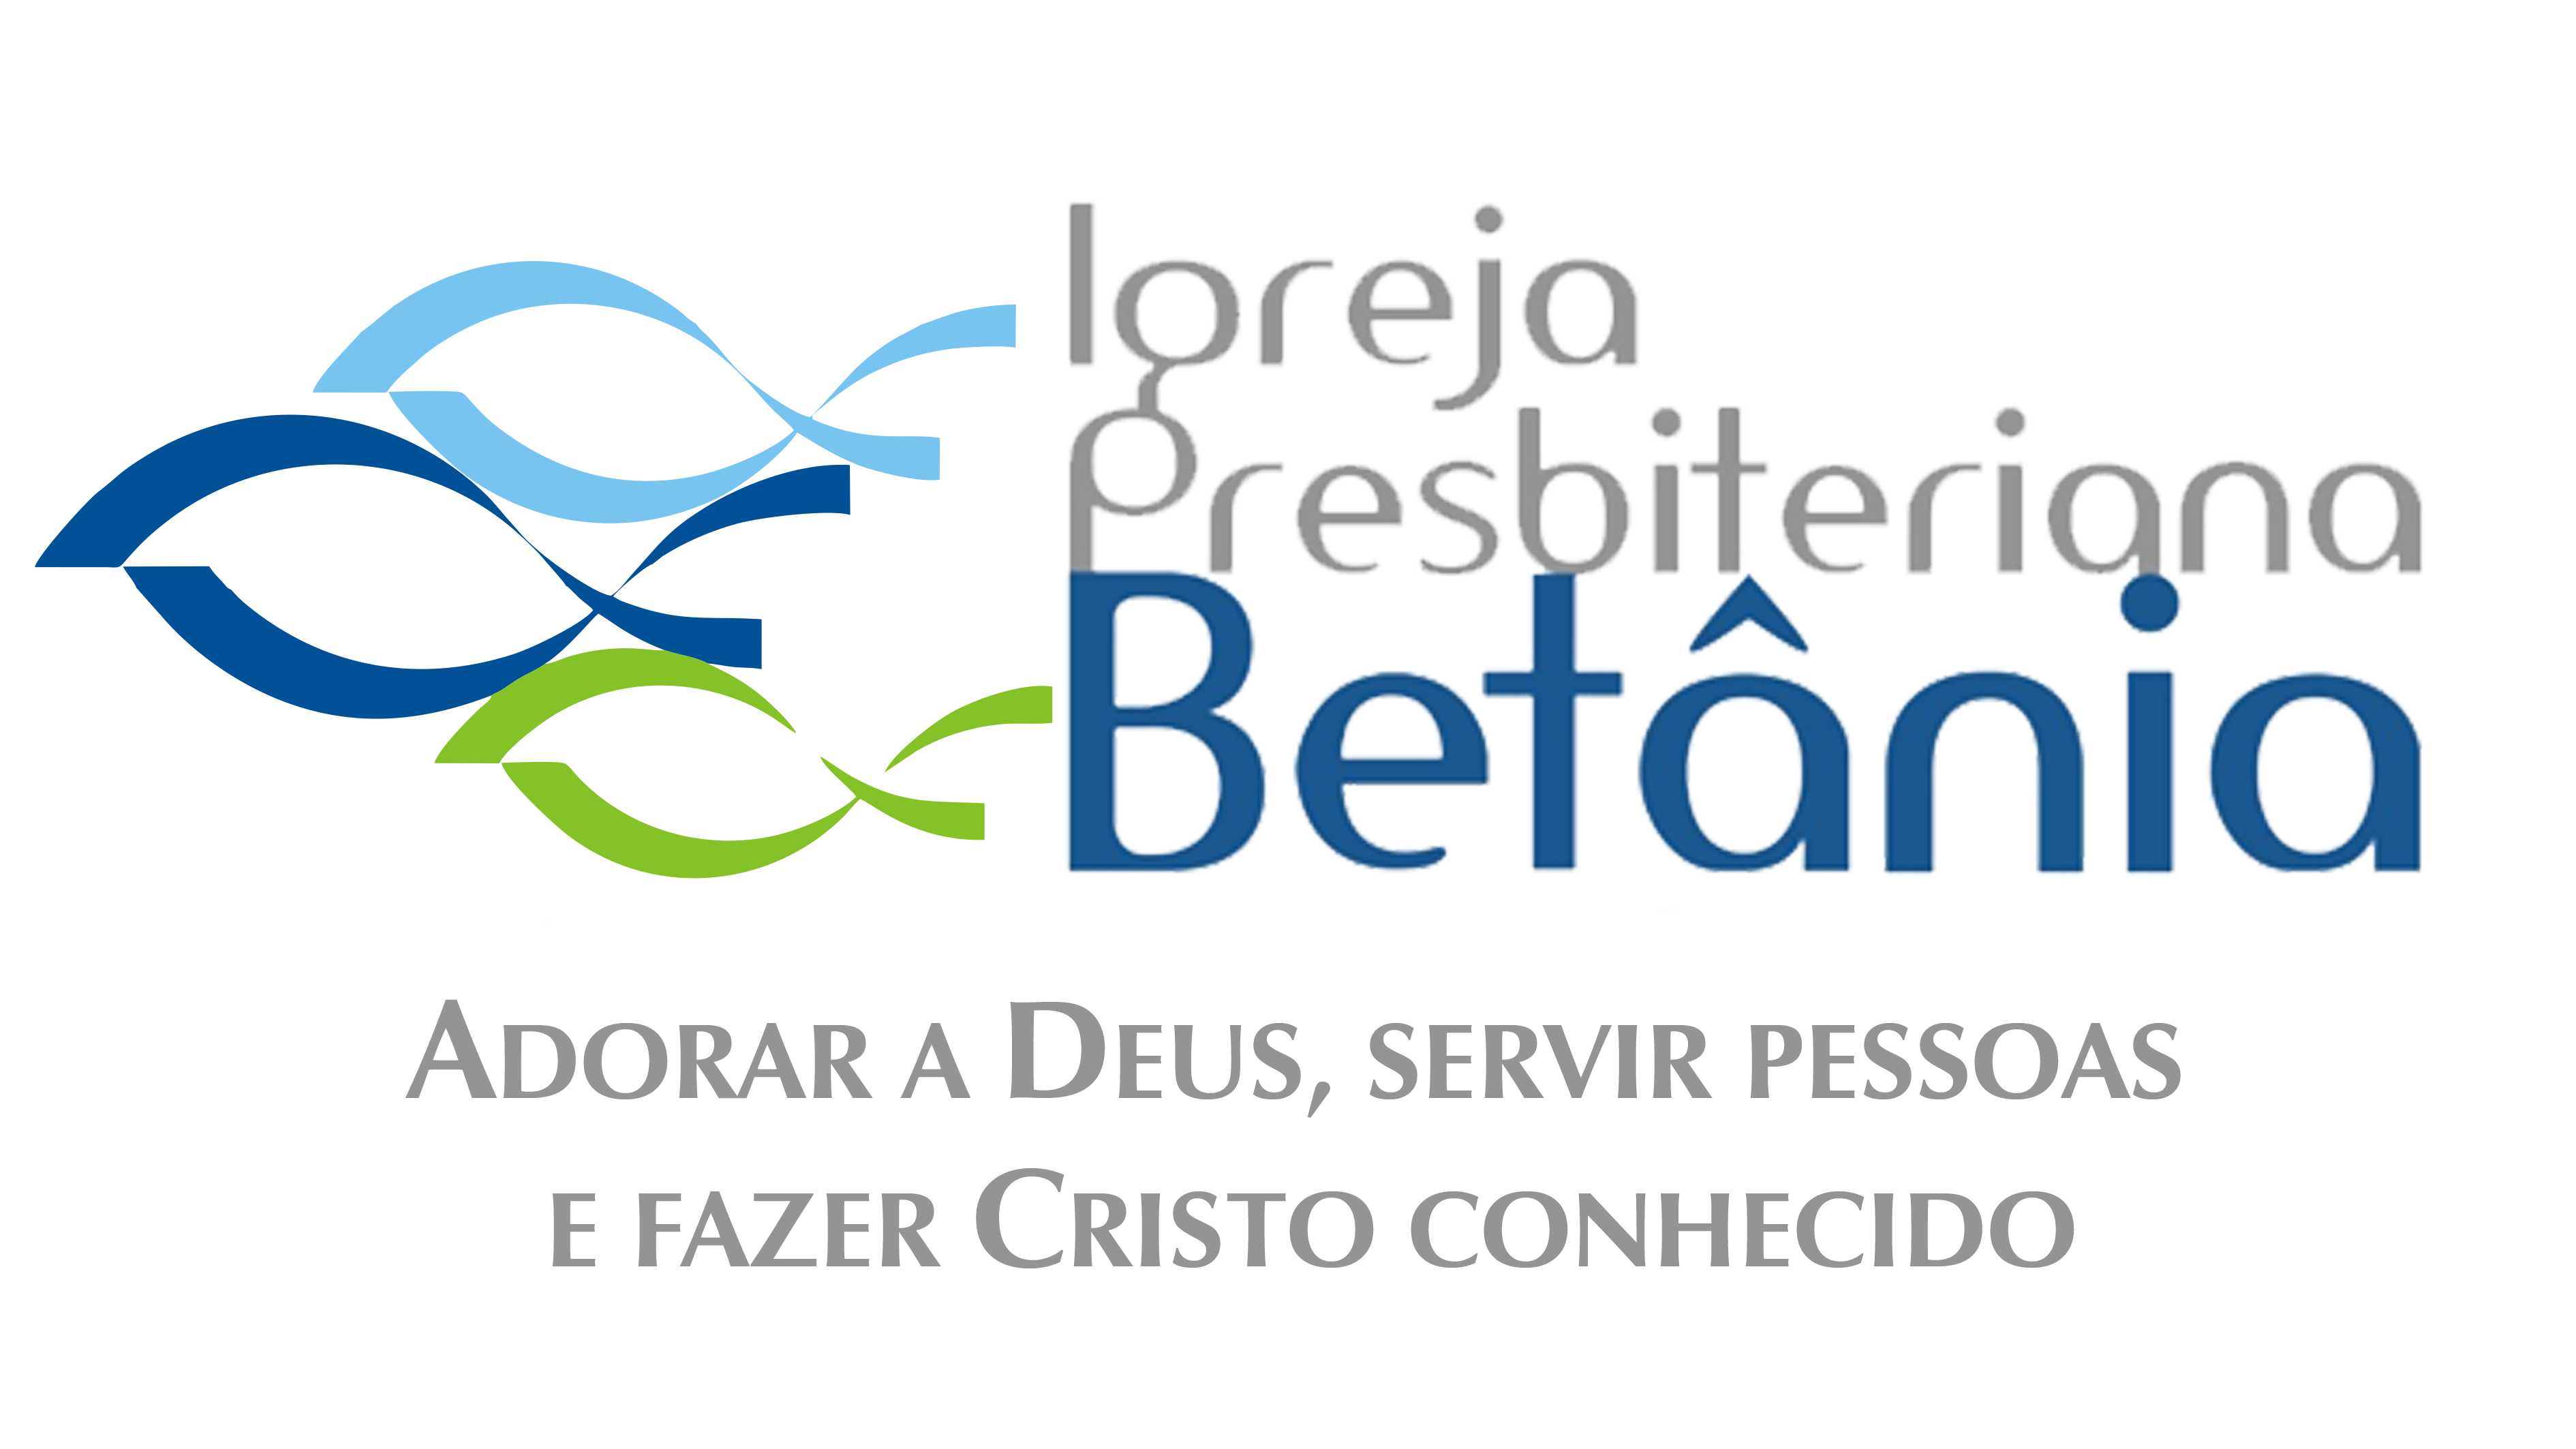 Igreja Presbiteriana Betânia